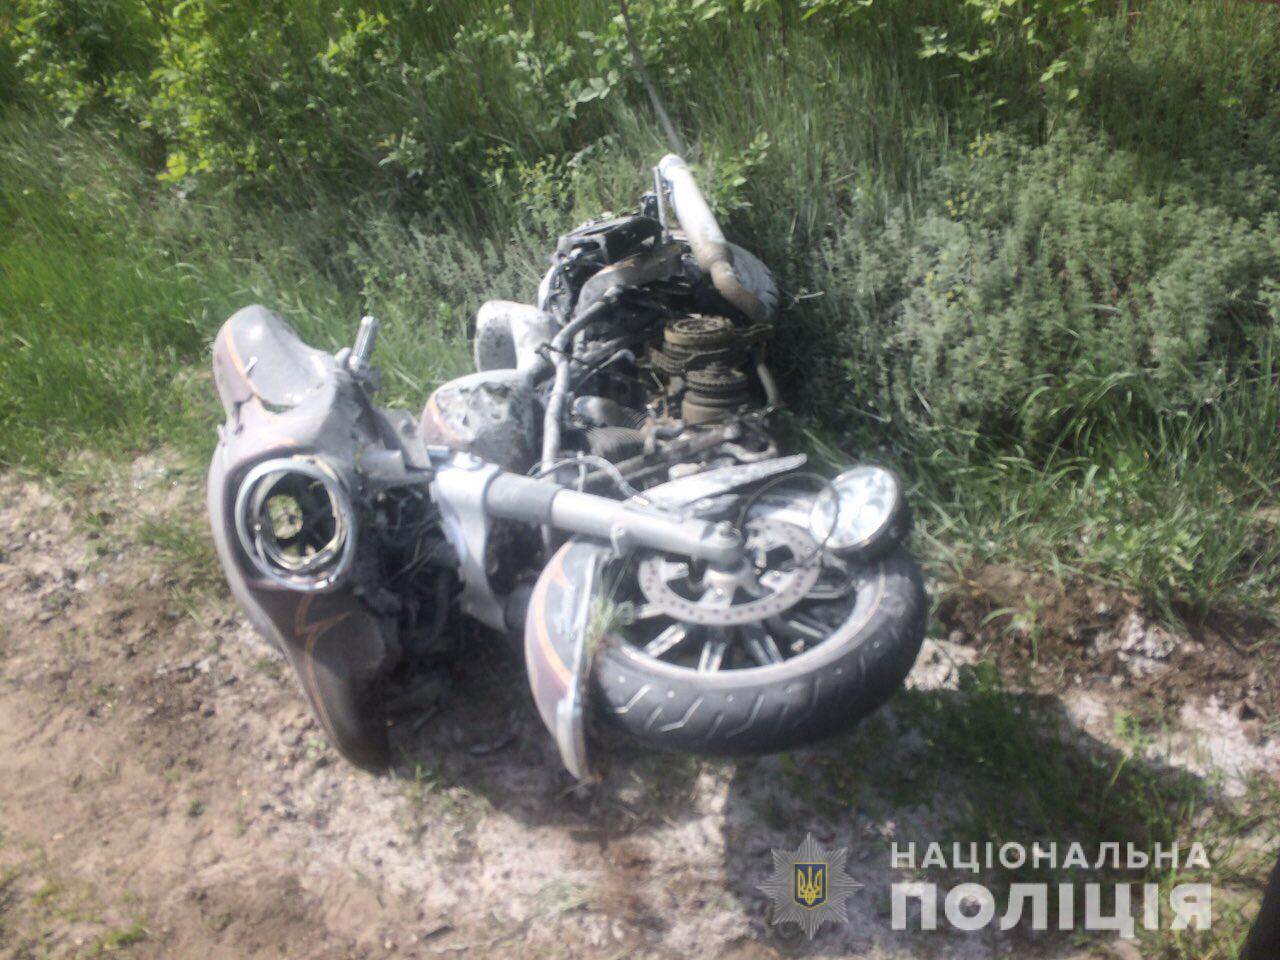 Под Харьковом погиб байкер, есть пострадавшие (подробности, фото)